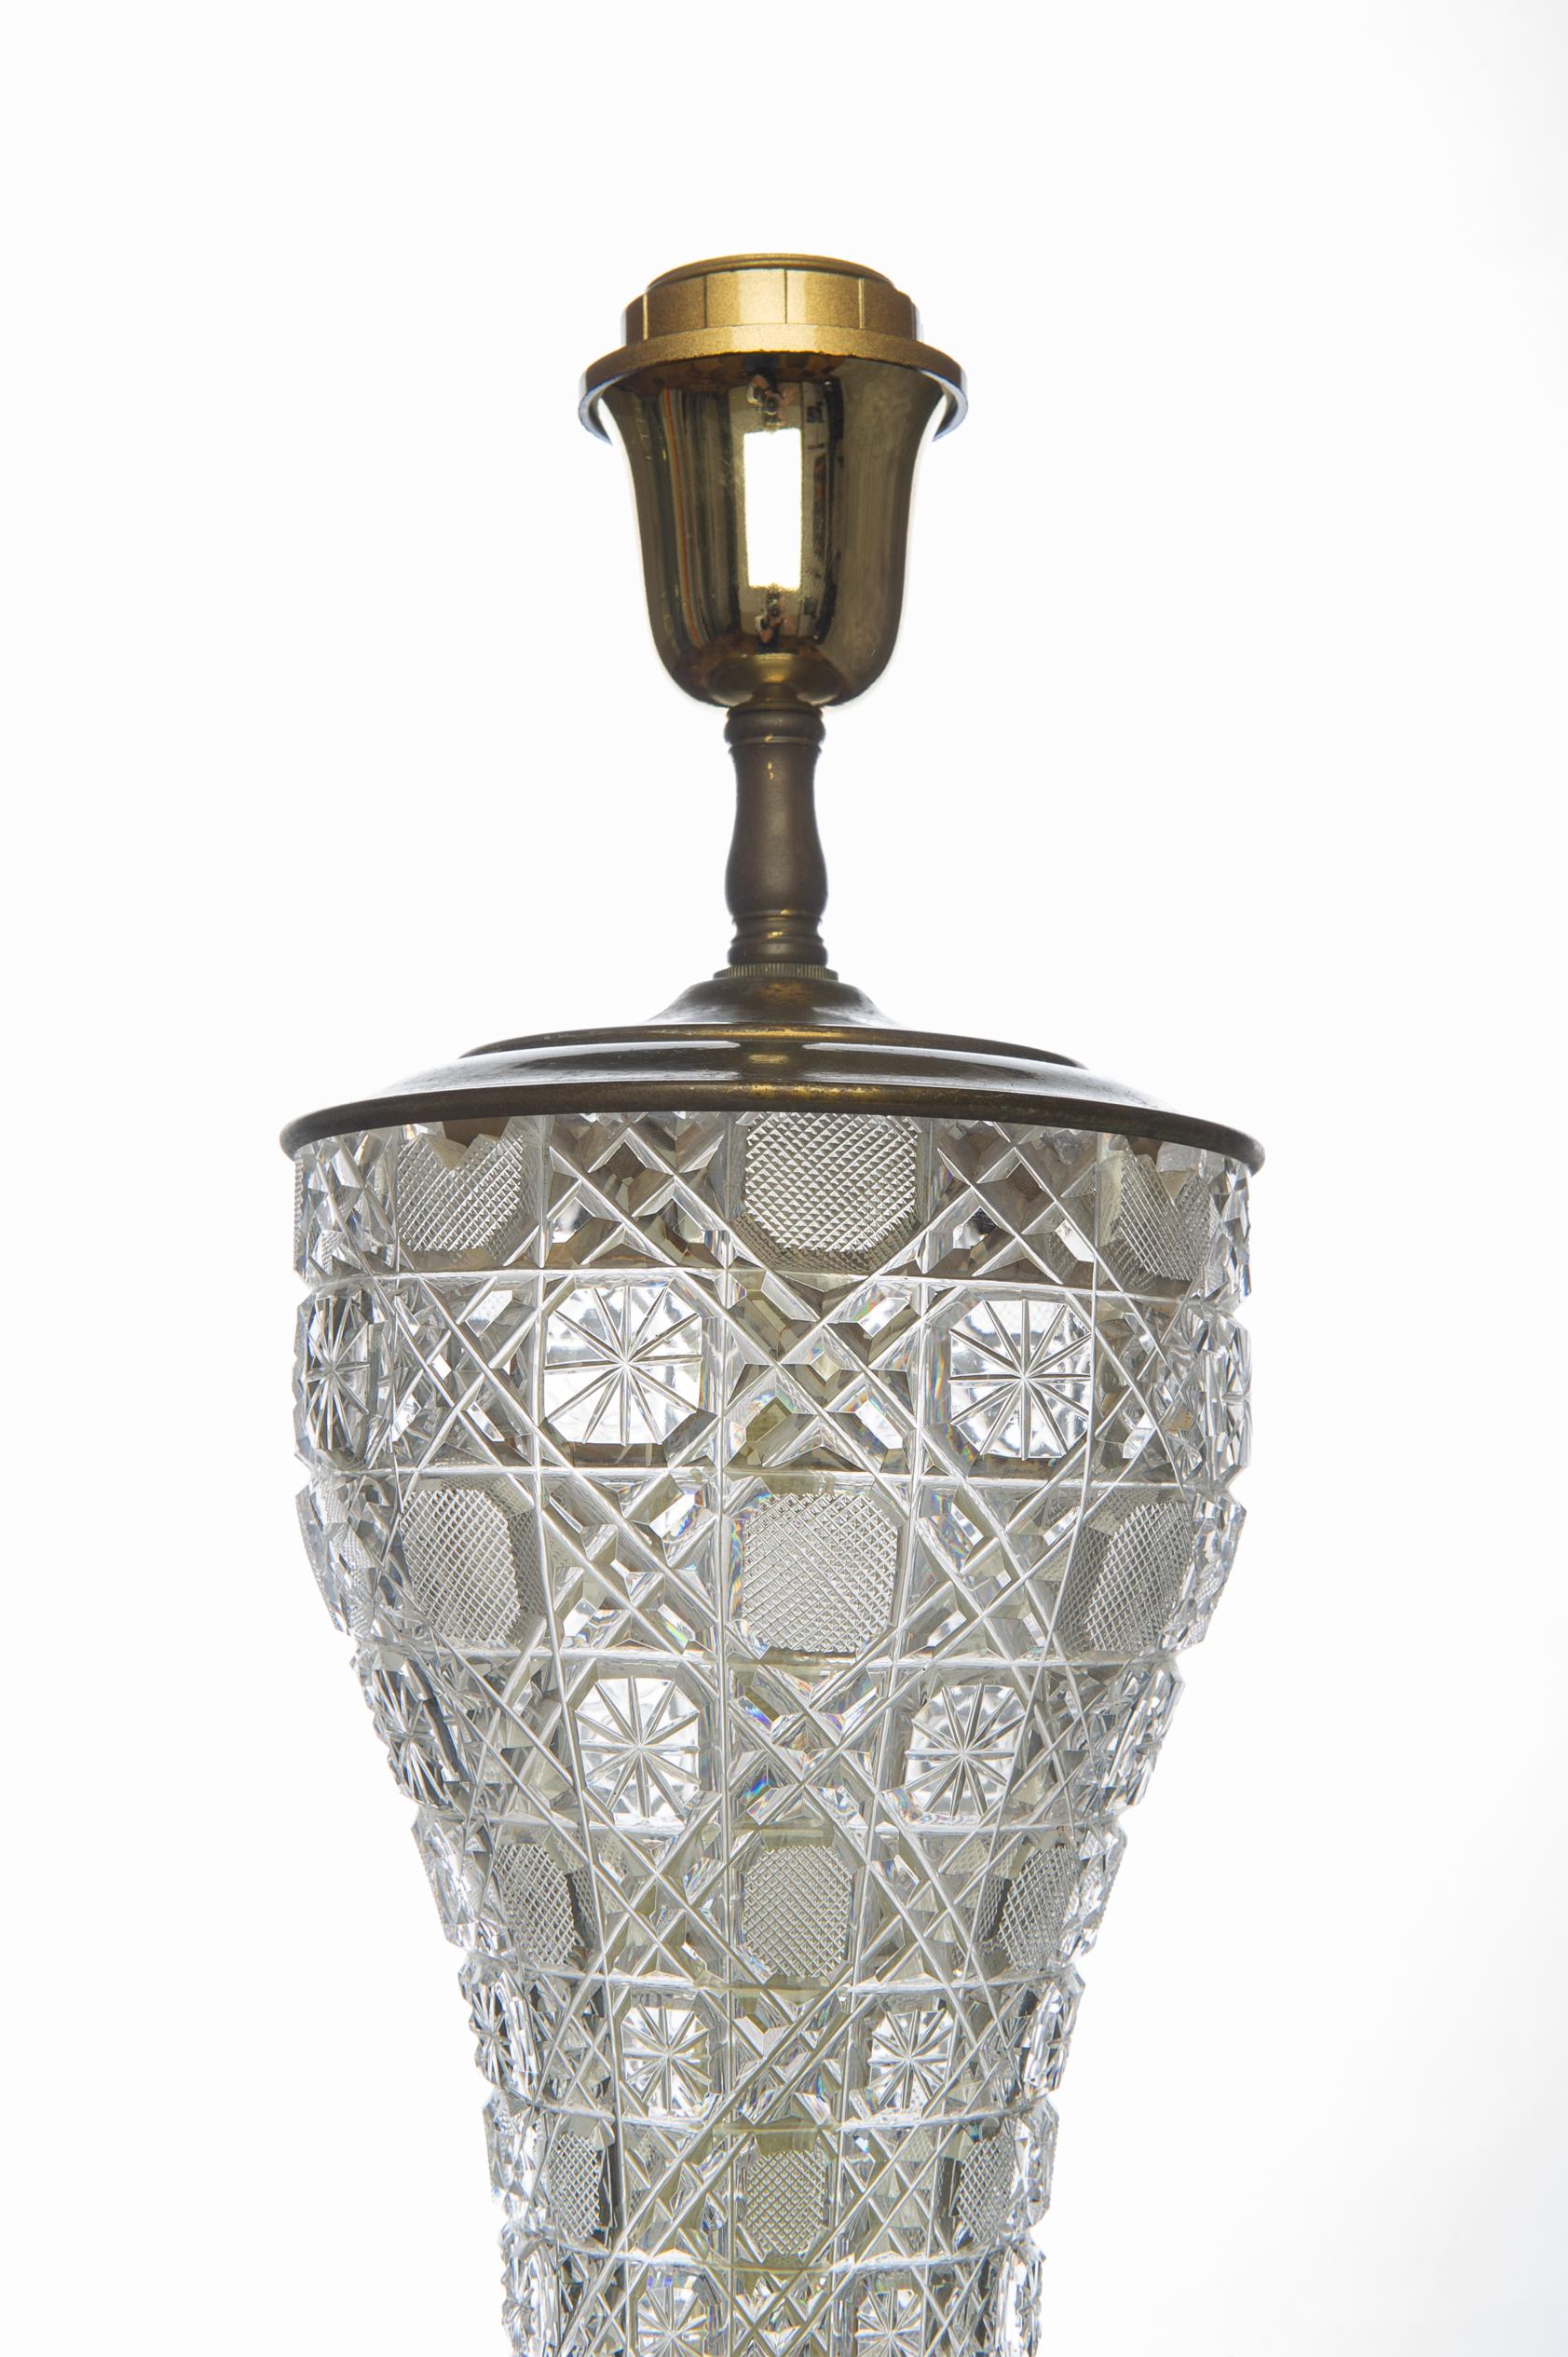 C'est la lampe de table Murano classique du milieu du siècle,  avec le cristal gravé et la base en laiton : très élégant .
Je ne vise pas le chapeau parce que le volume augmenterait le coût de l'expédition : ce n'est pas pratique.
il n'est PAS